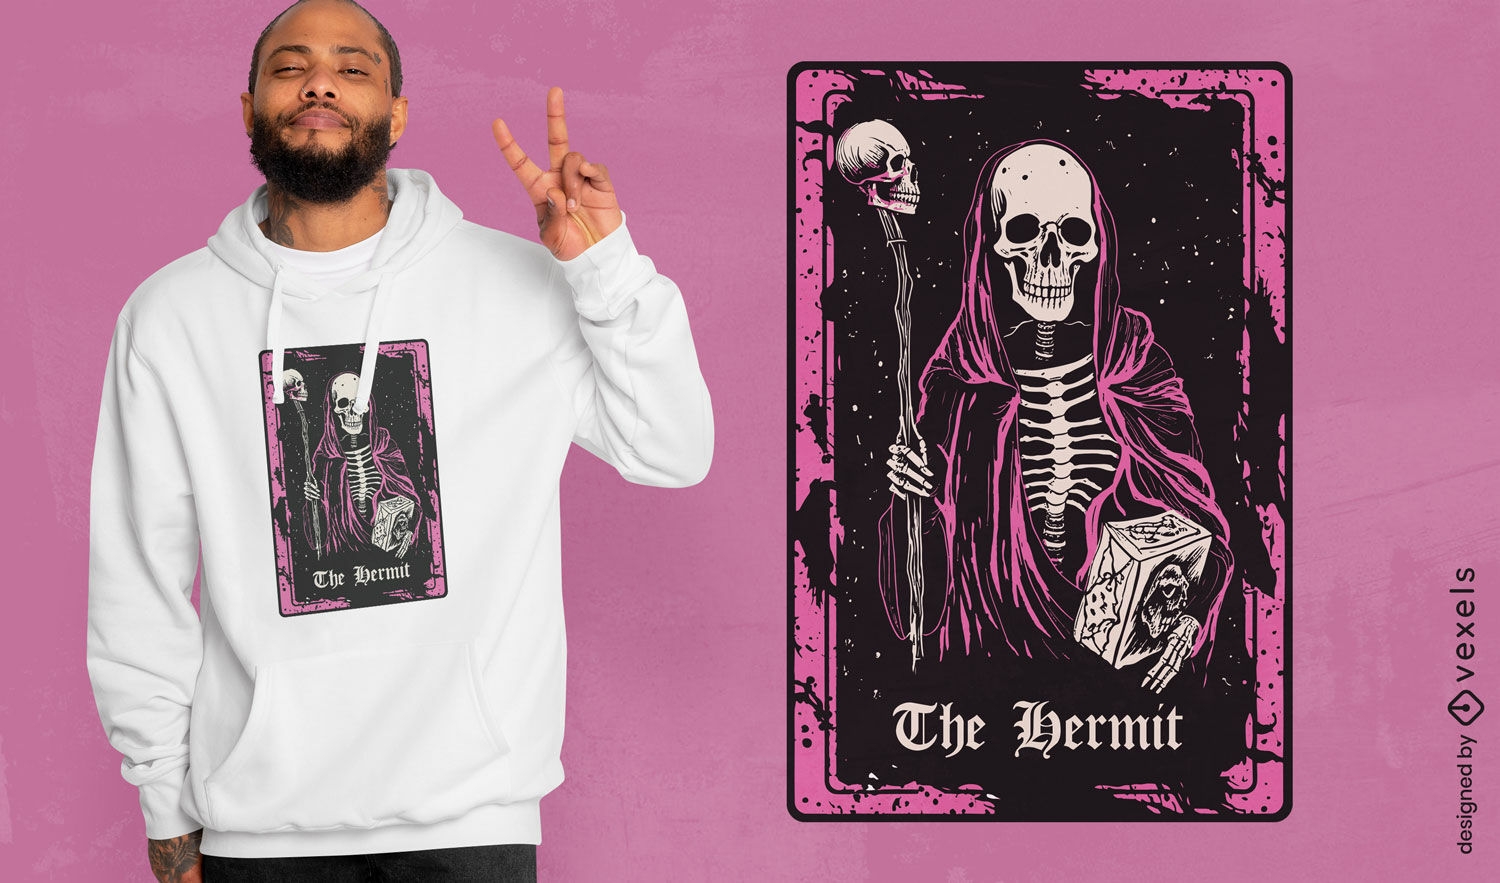 Grim reaper tarot card t-shirt design